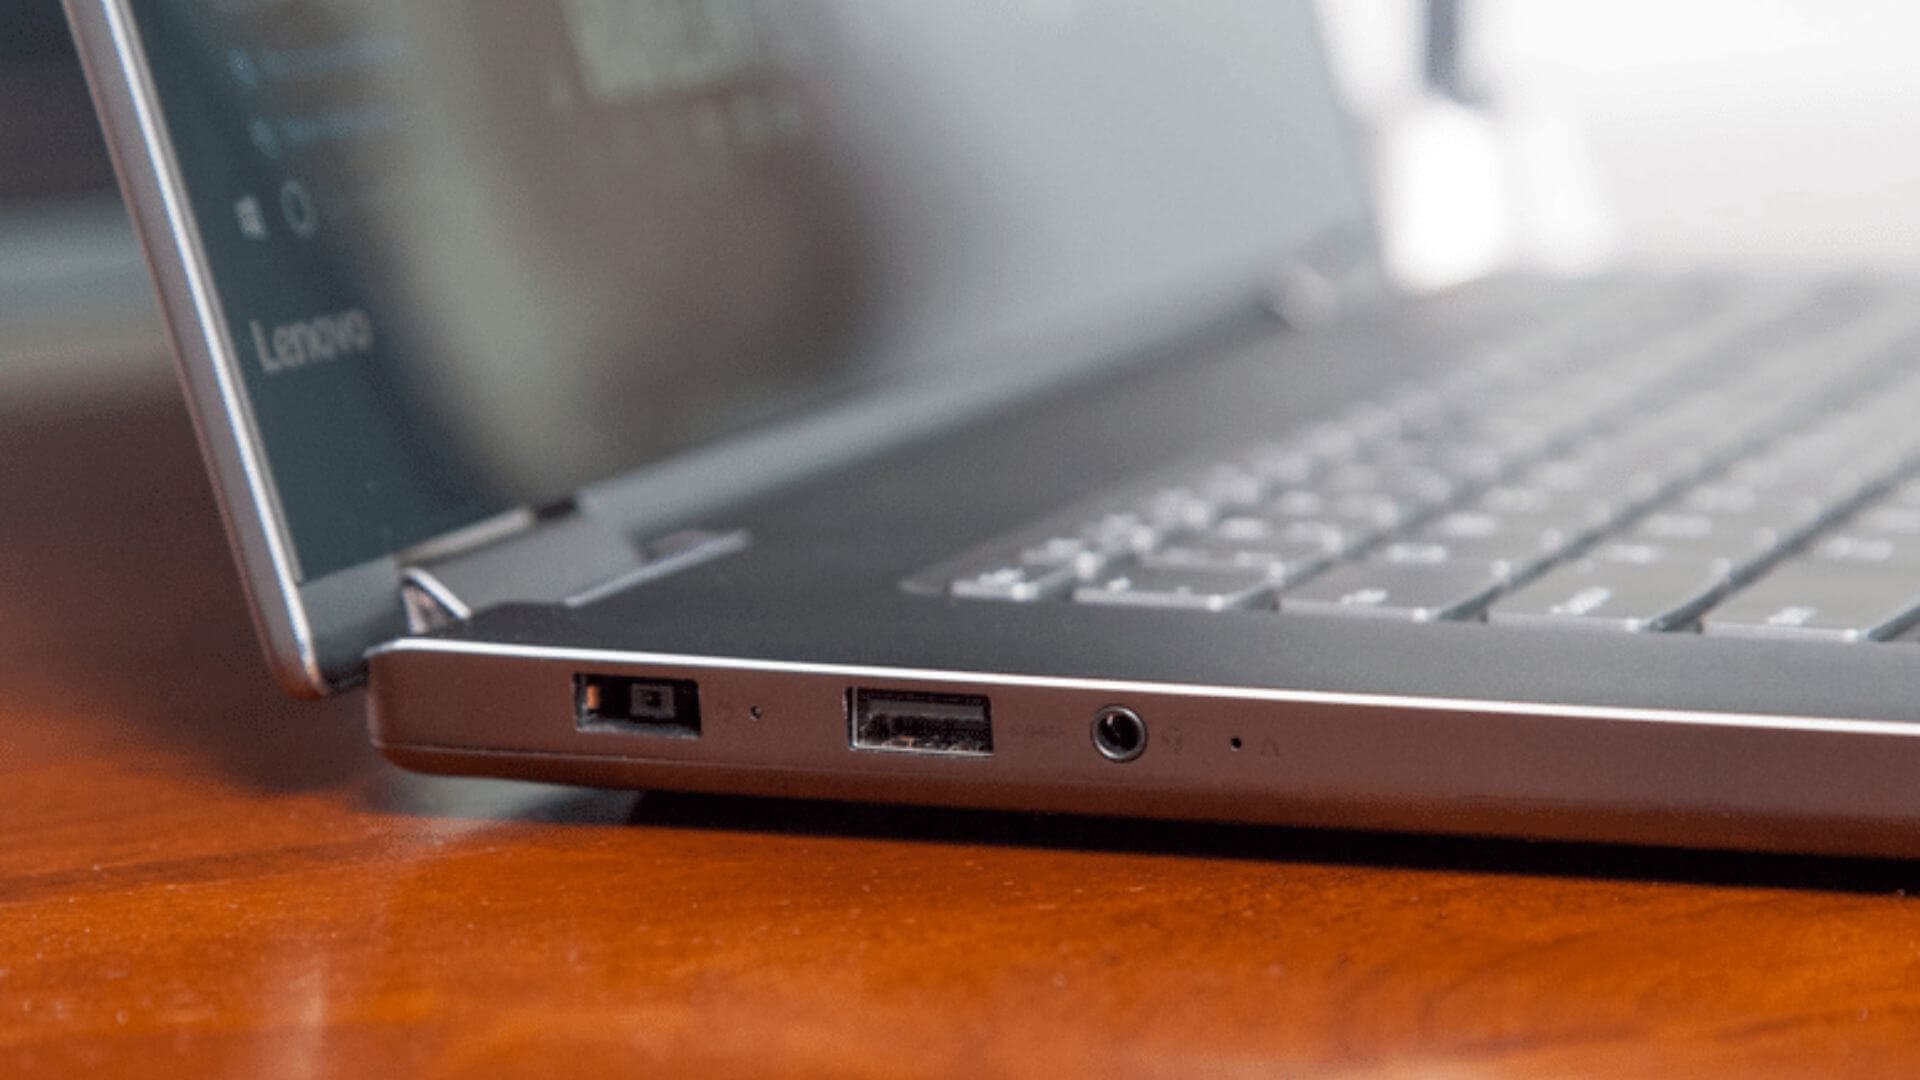 Get to Know the Lenovo Yoga 720-15: A Comprehensive Review